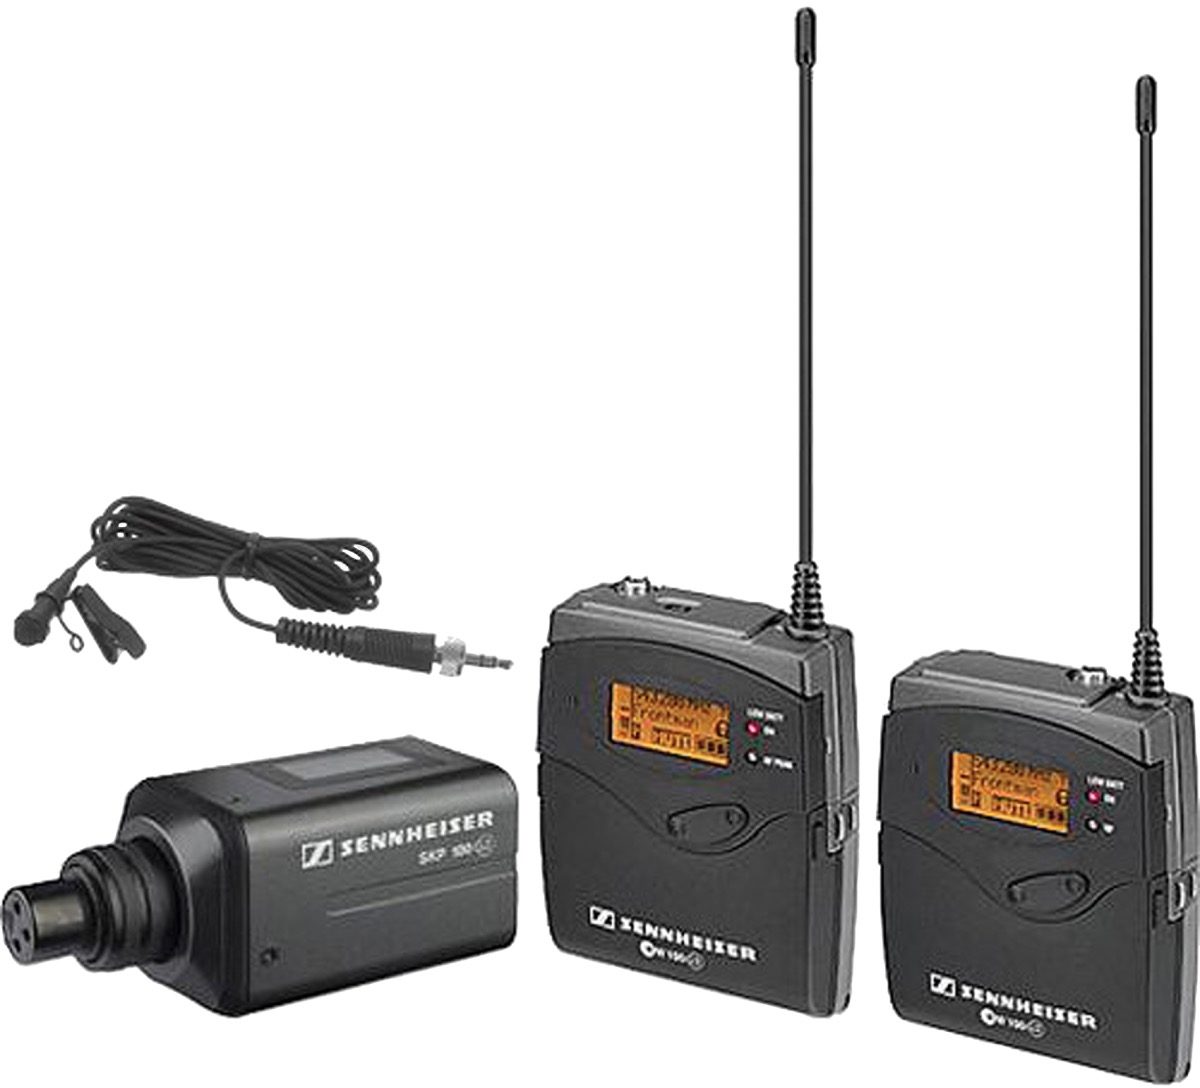 Sennheiser EW100 SK 100 G3 Bodypack Transmitter A Band 516-558 MHz 